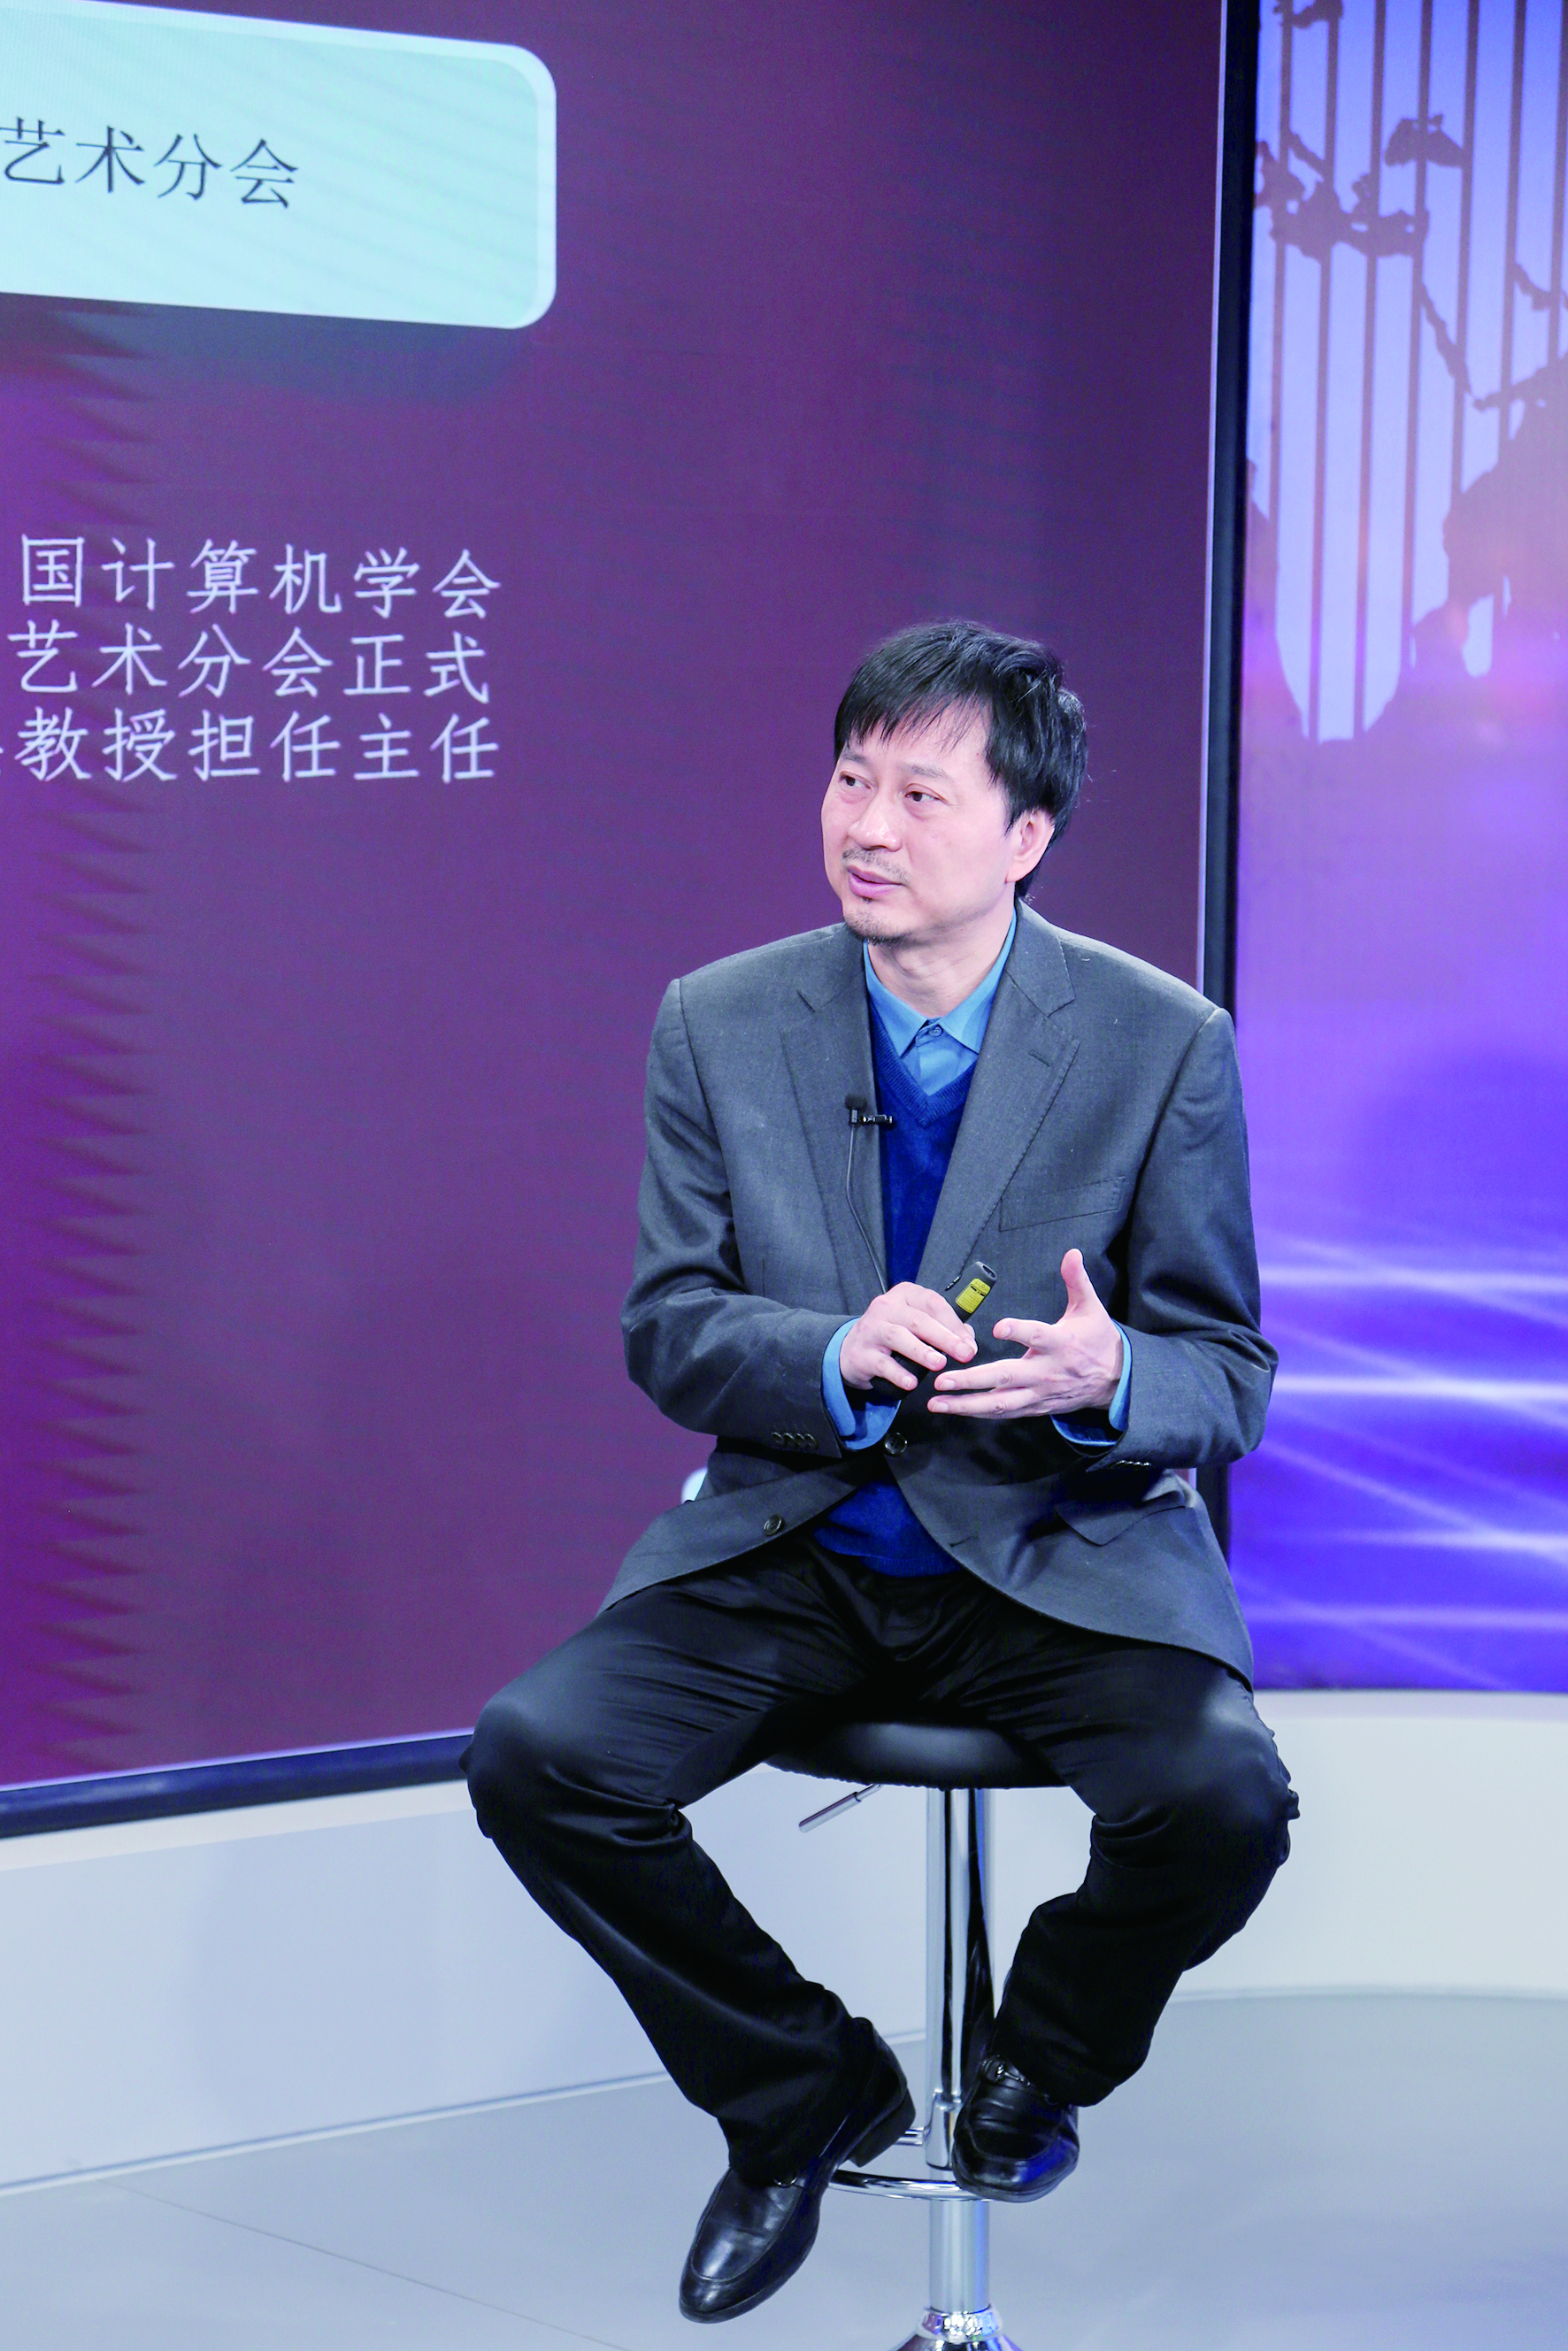 中央音乐学院音乐人工智能与音乐信息科技系系主任,教授李小兵纵观